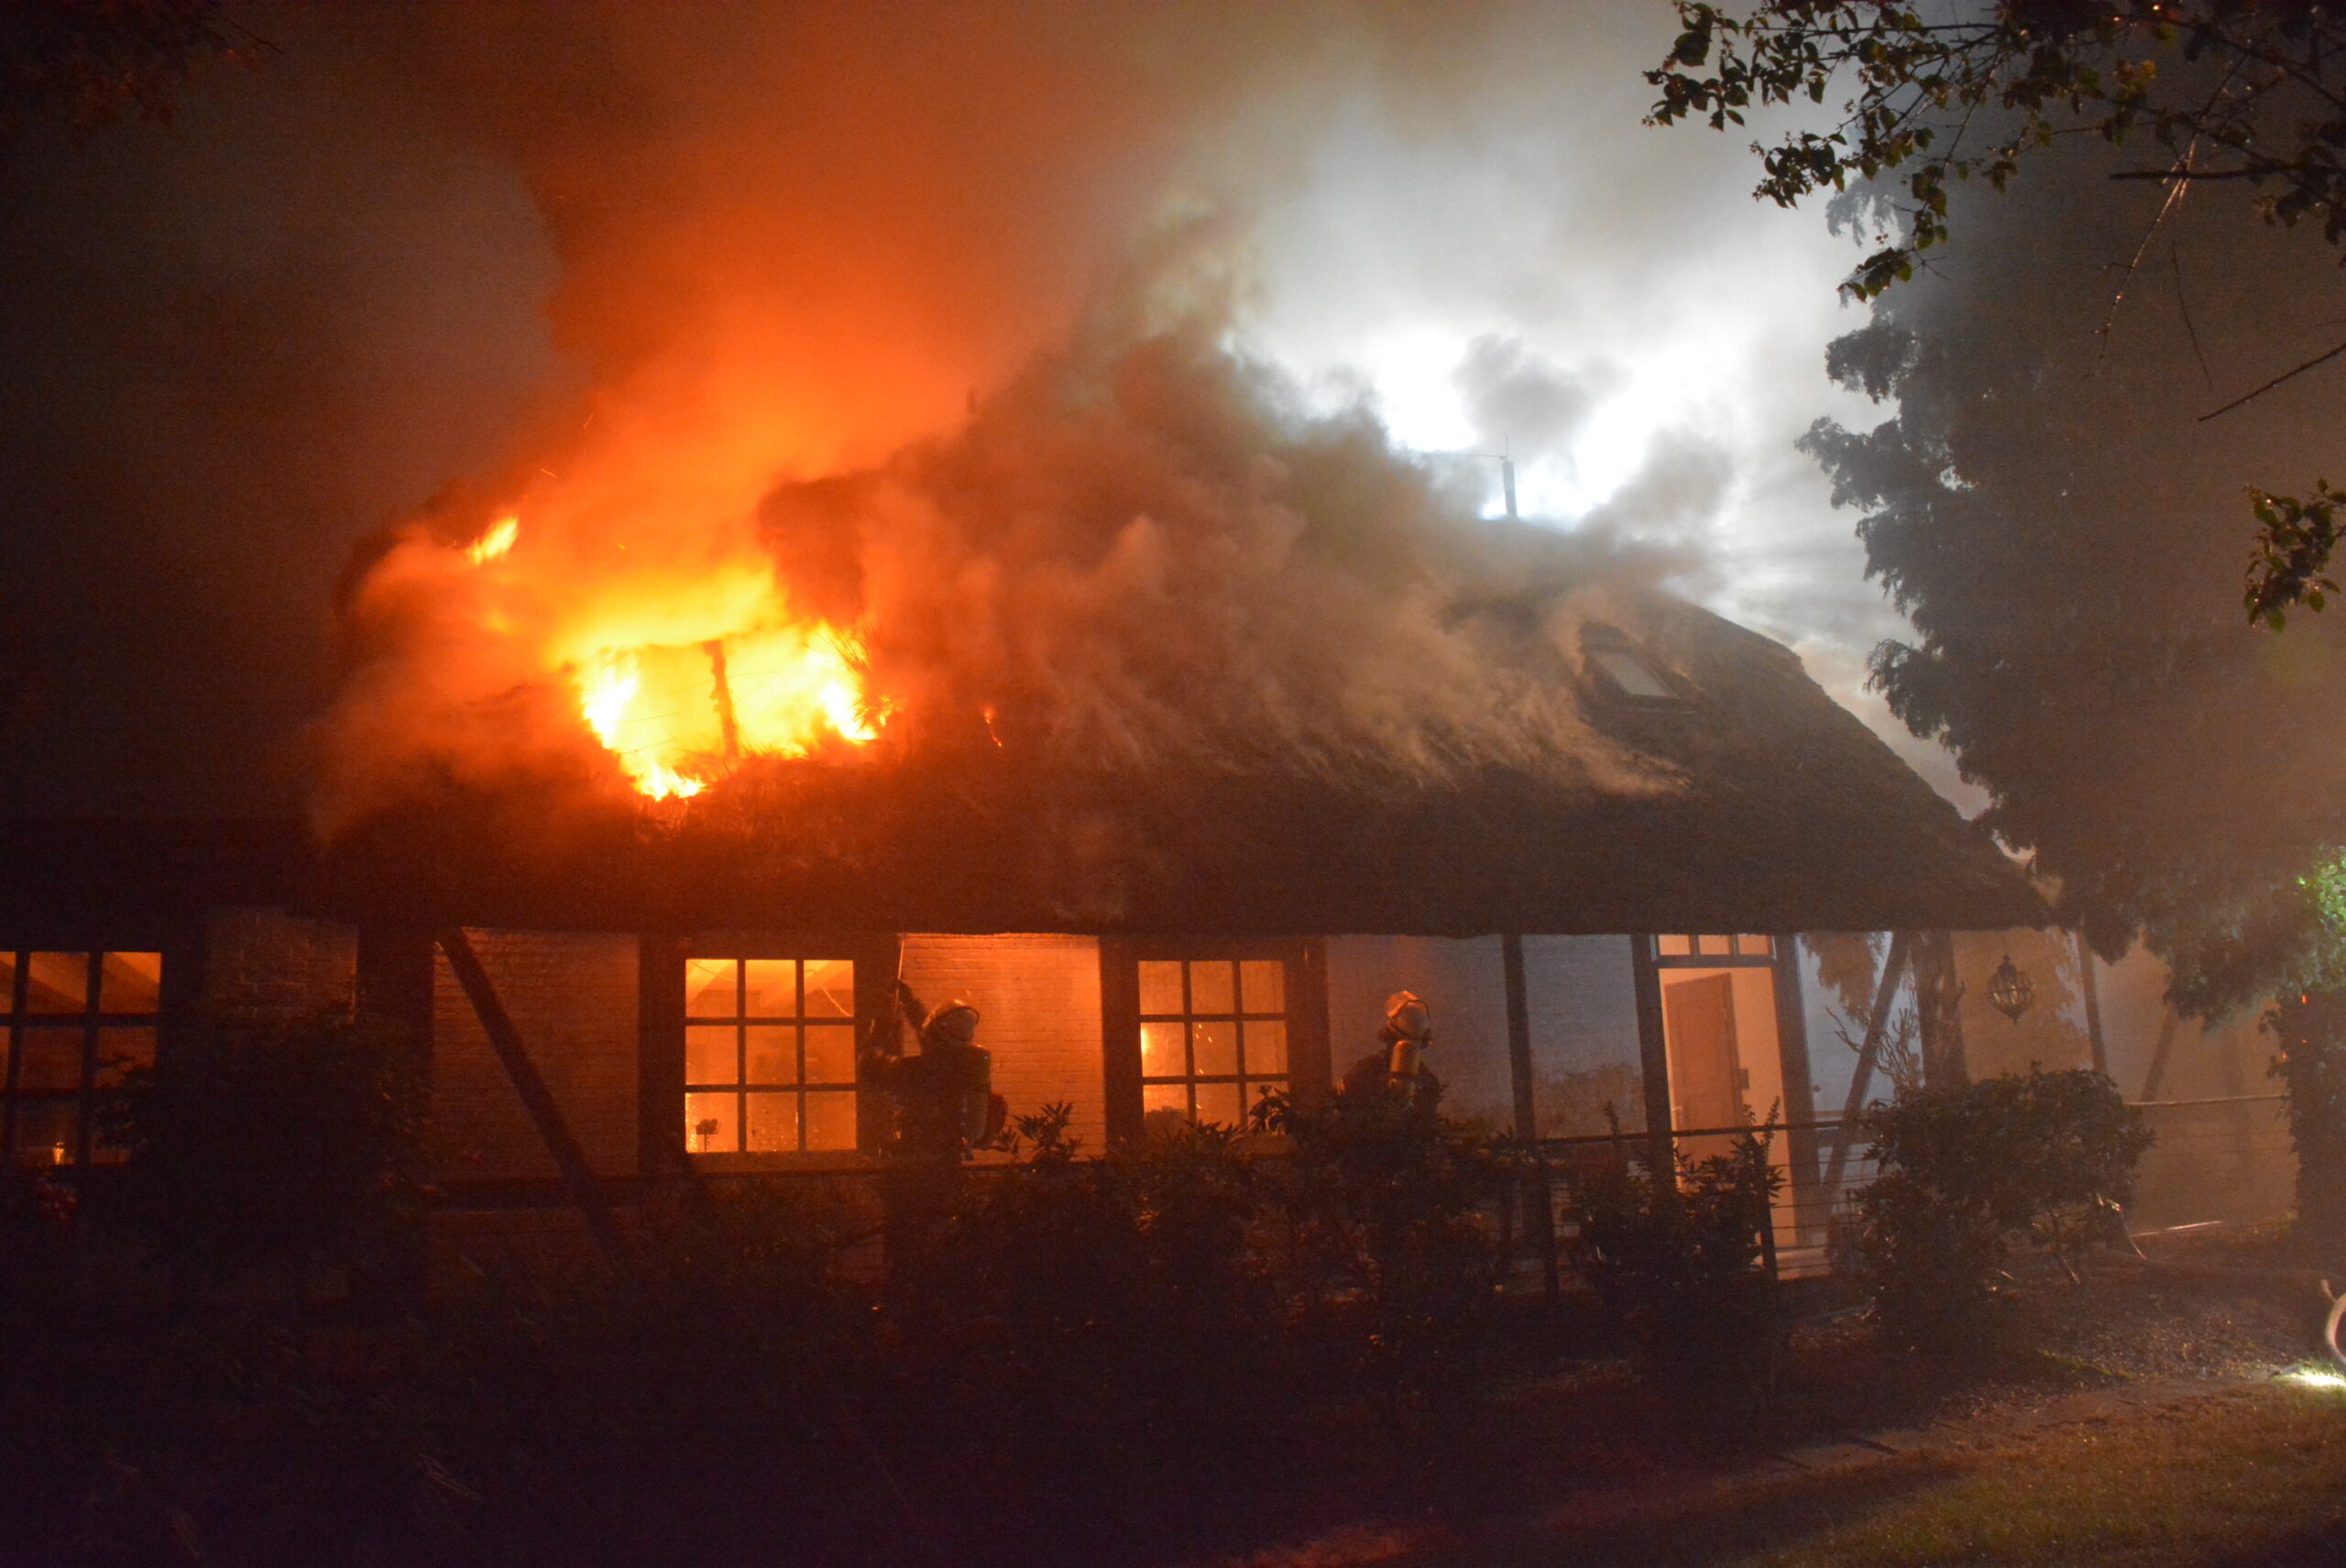 Feuerwehrkräfte löschen die Flammen, die sich durch das Dach fressen.